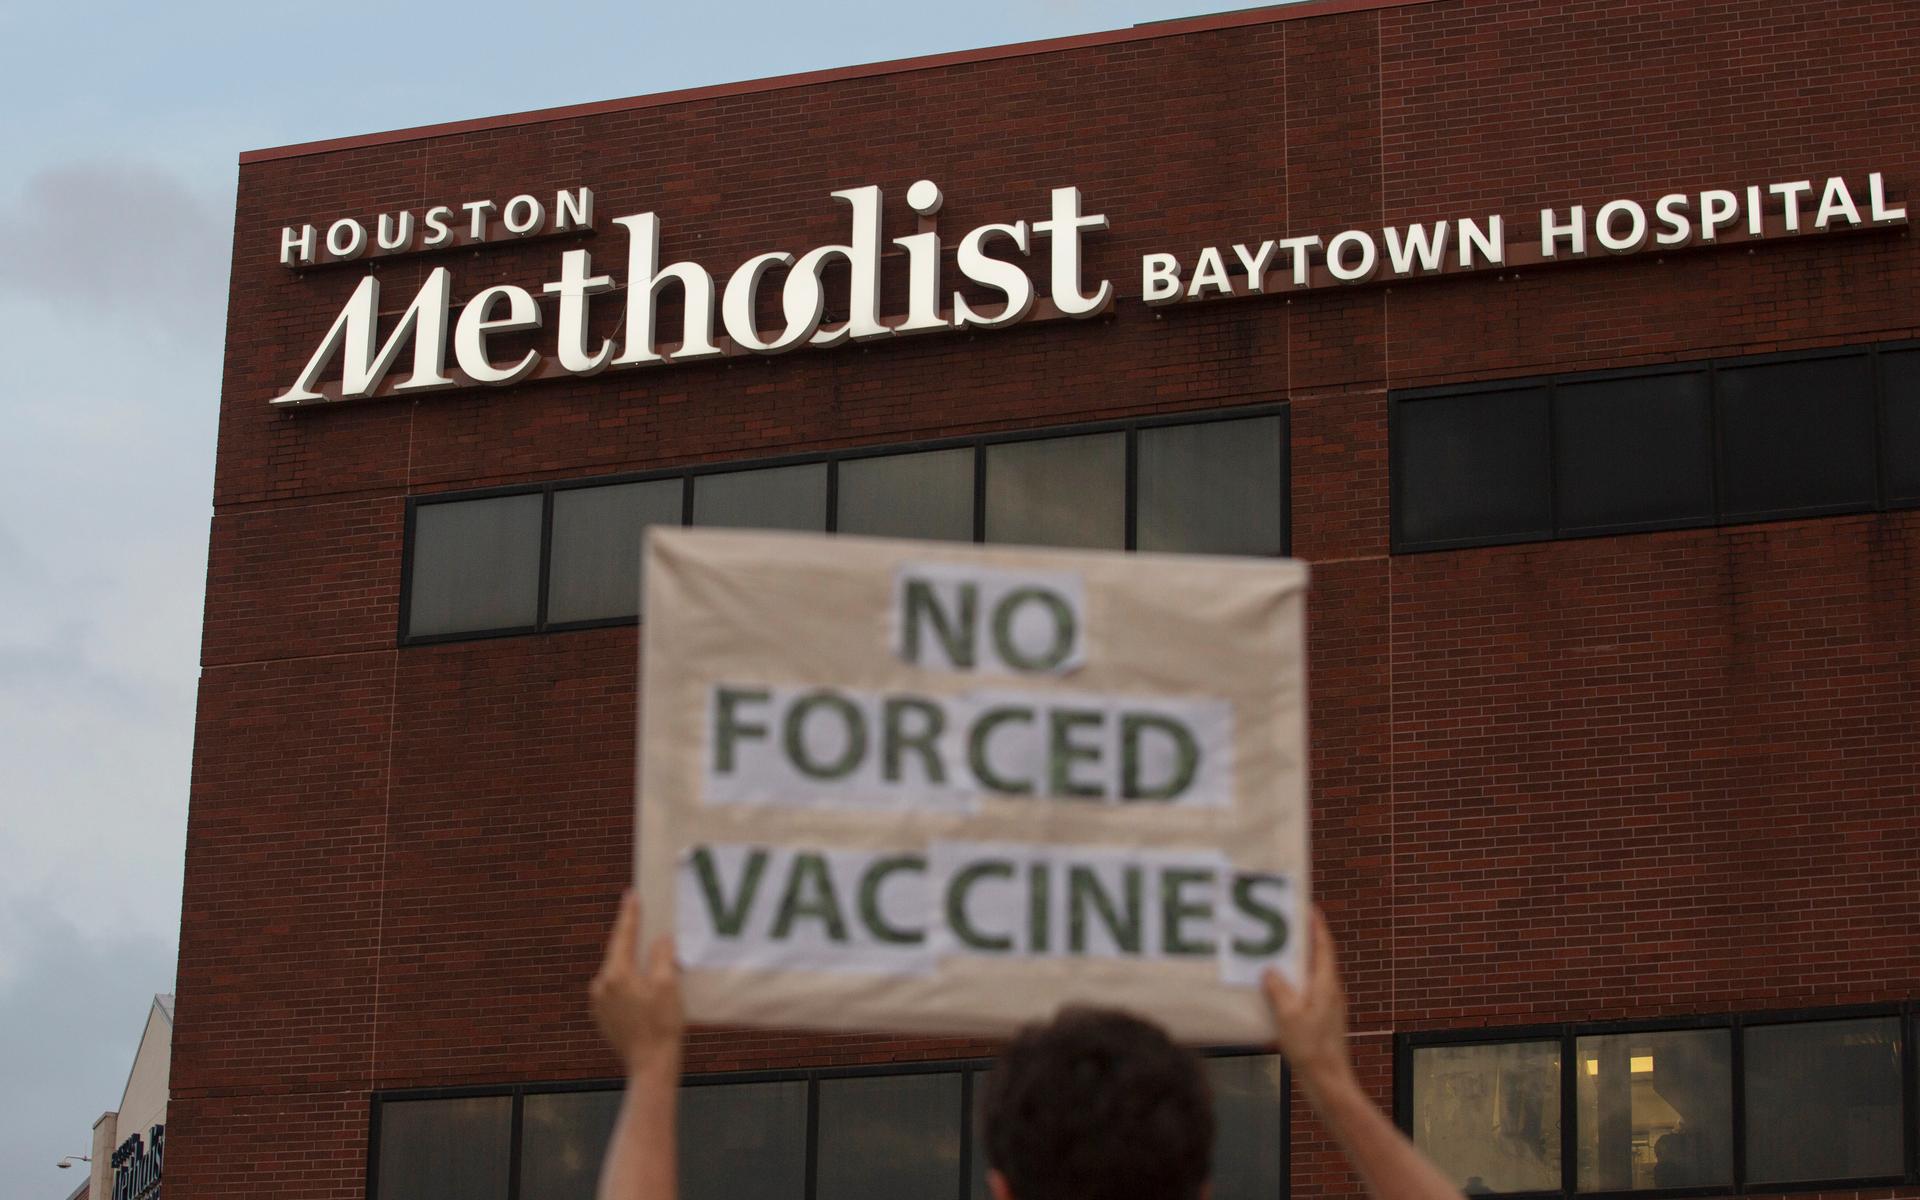 Anställda på Houston Methodist Hospital i Baytown, Texas, måste vara vaccinerade mot covid-19 annars riskerar de att bli av med jobbet. Över 150 anställda har förlorat jobbet just av den anledningen, vilket väckt protester.